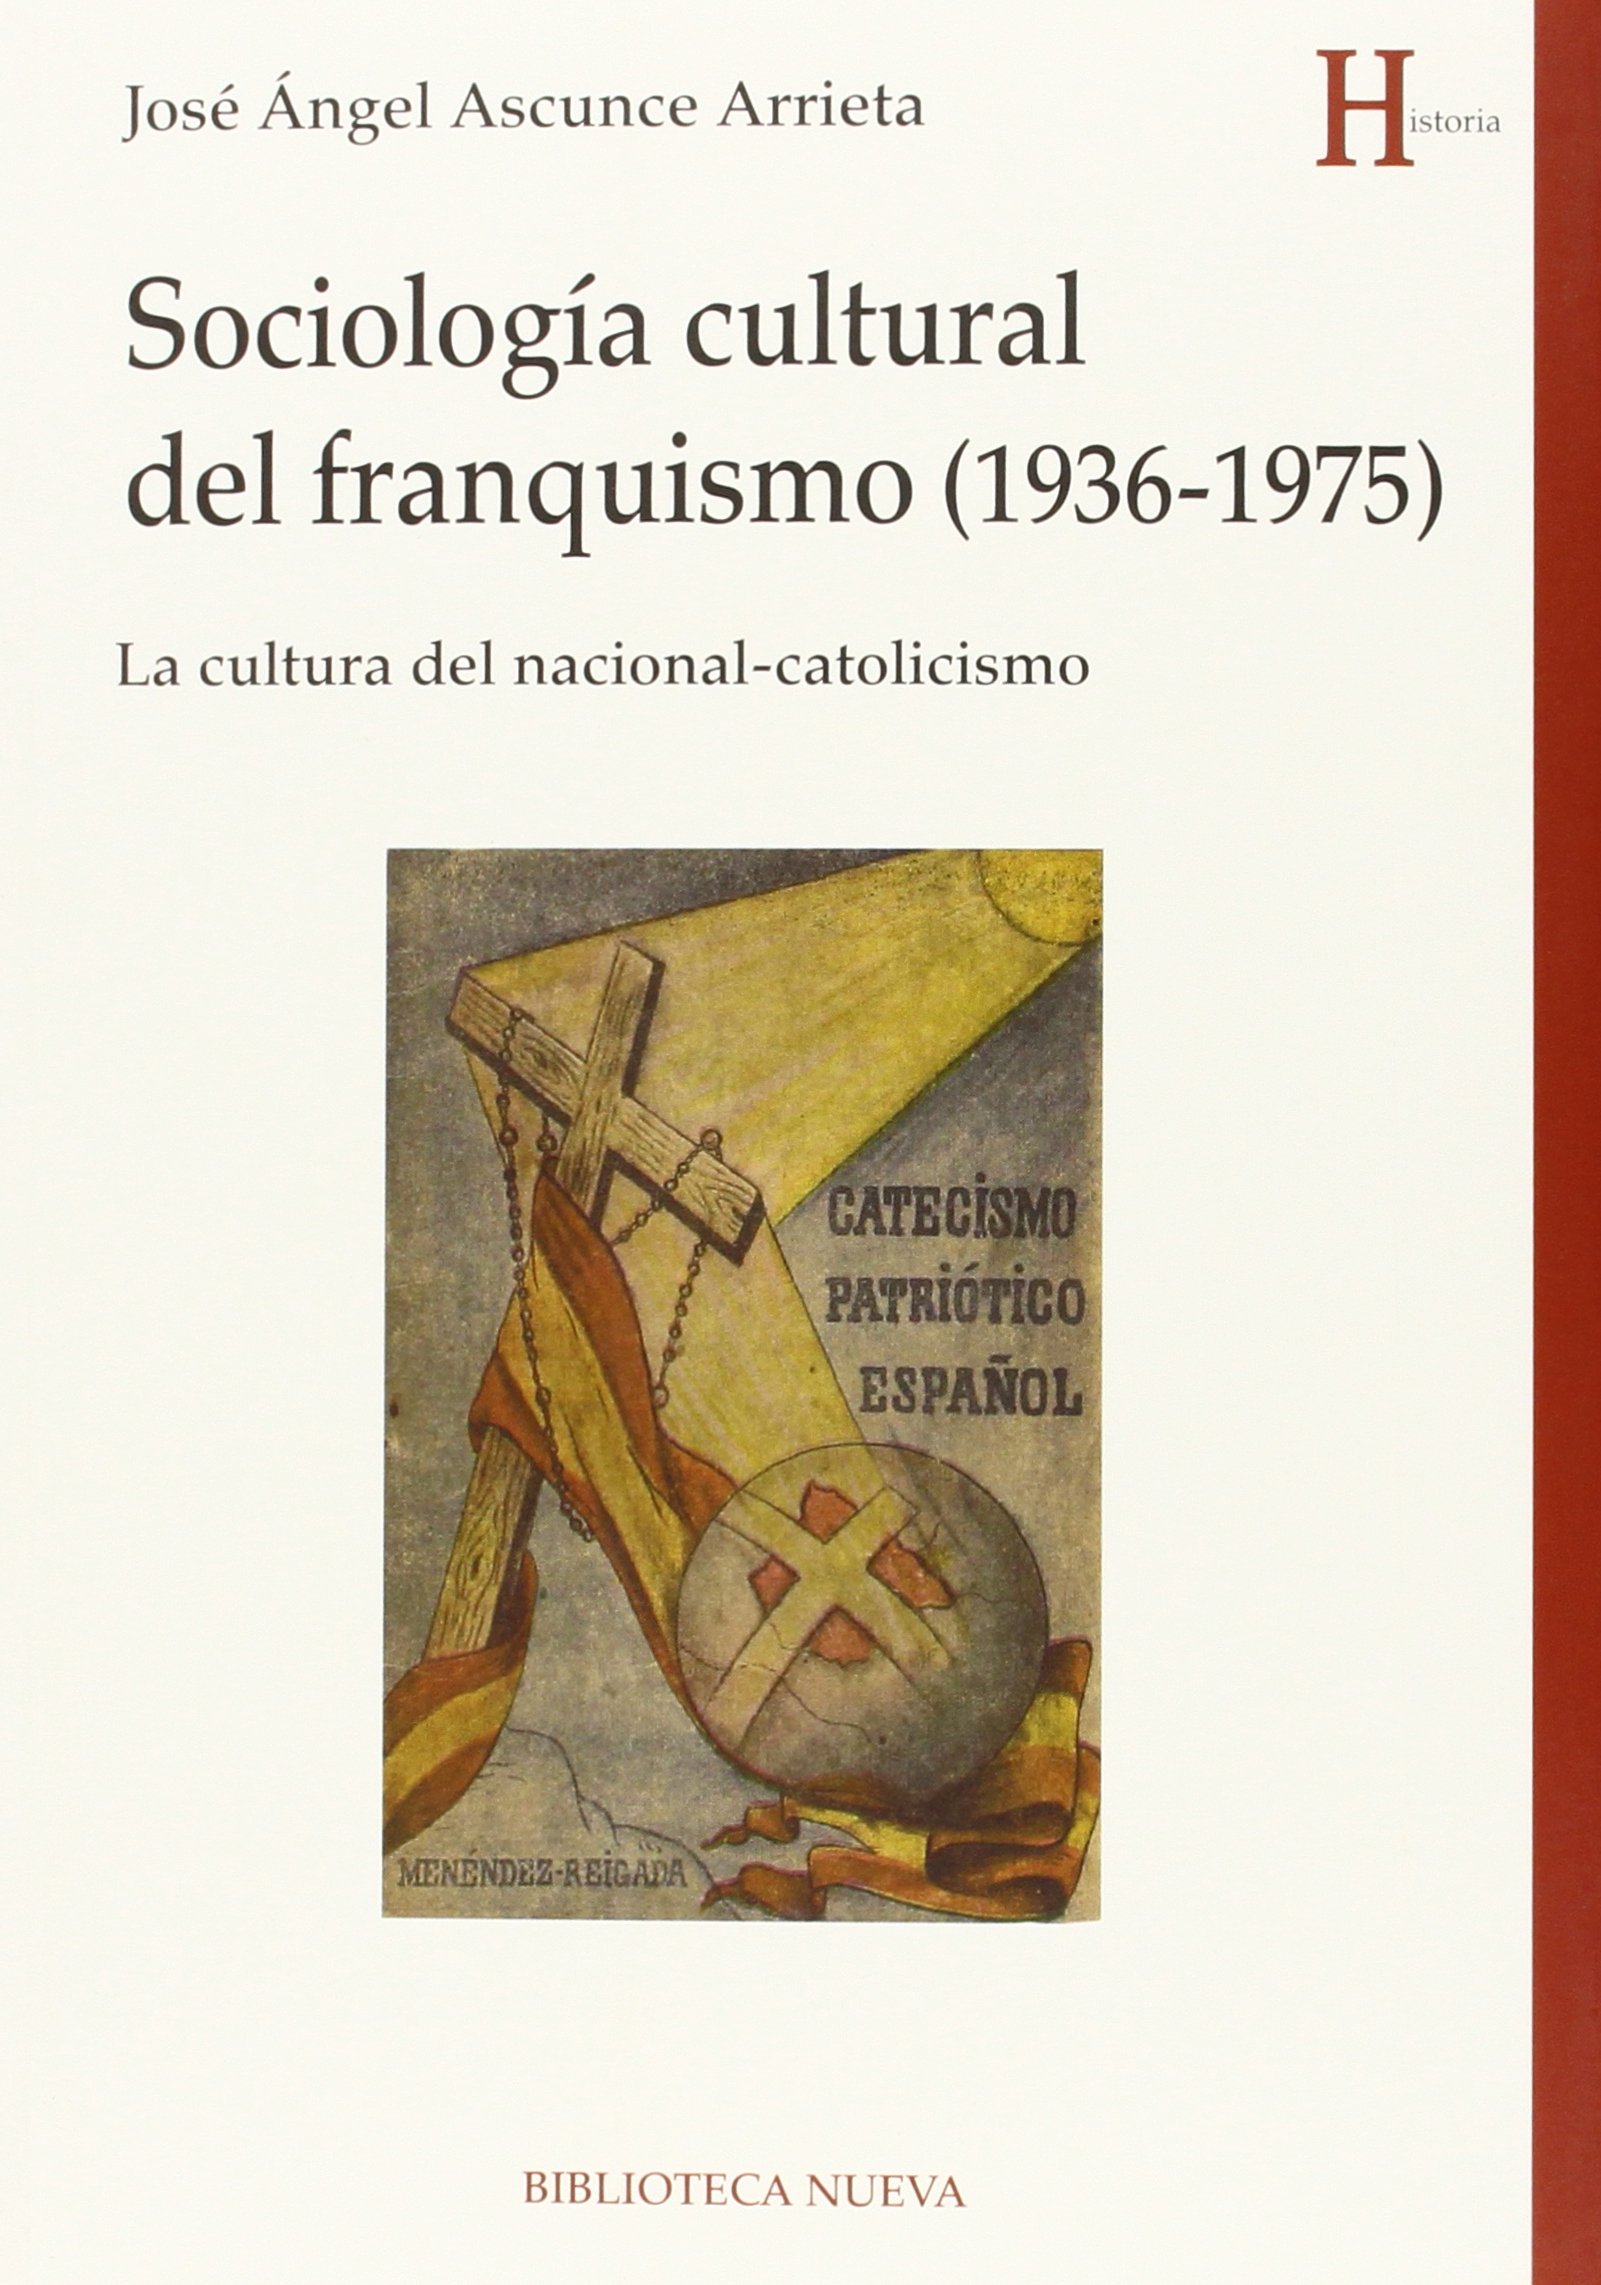 Imagen de portada del libro Sociología cultural del franquismo (1936-1975)